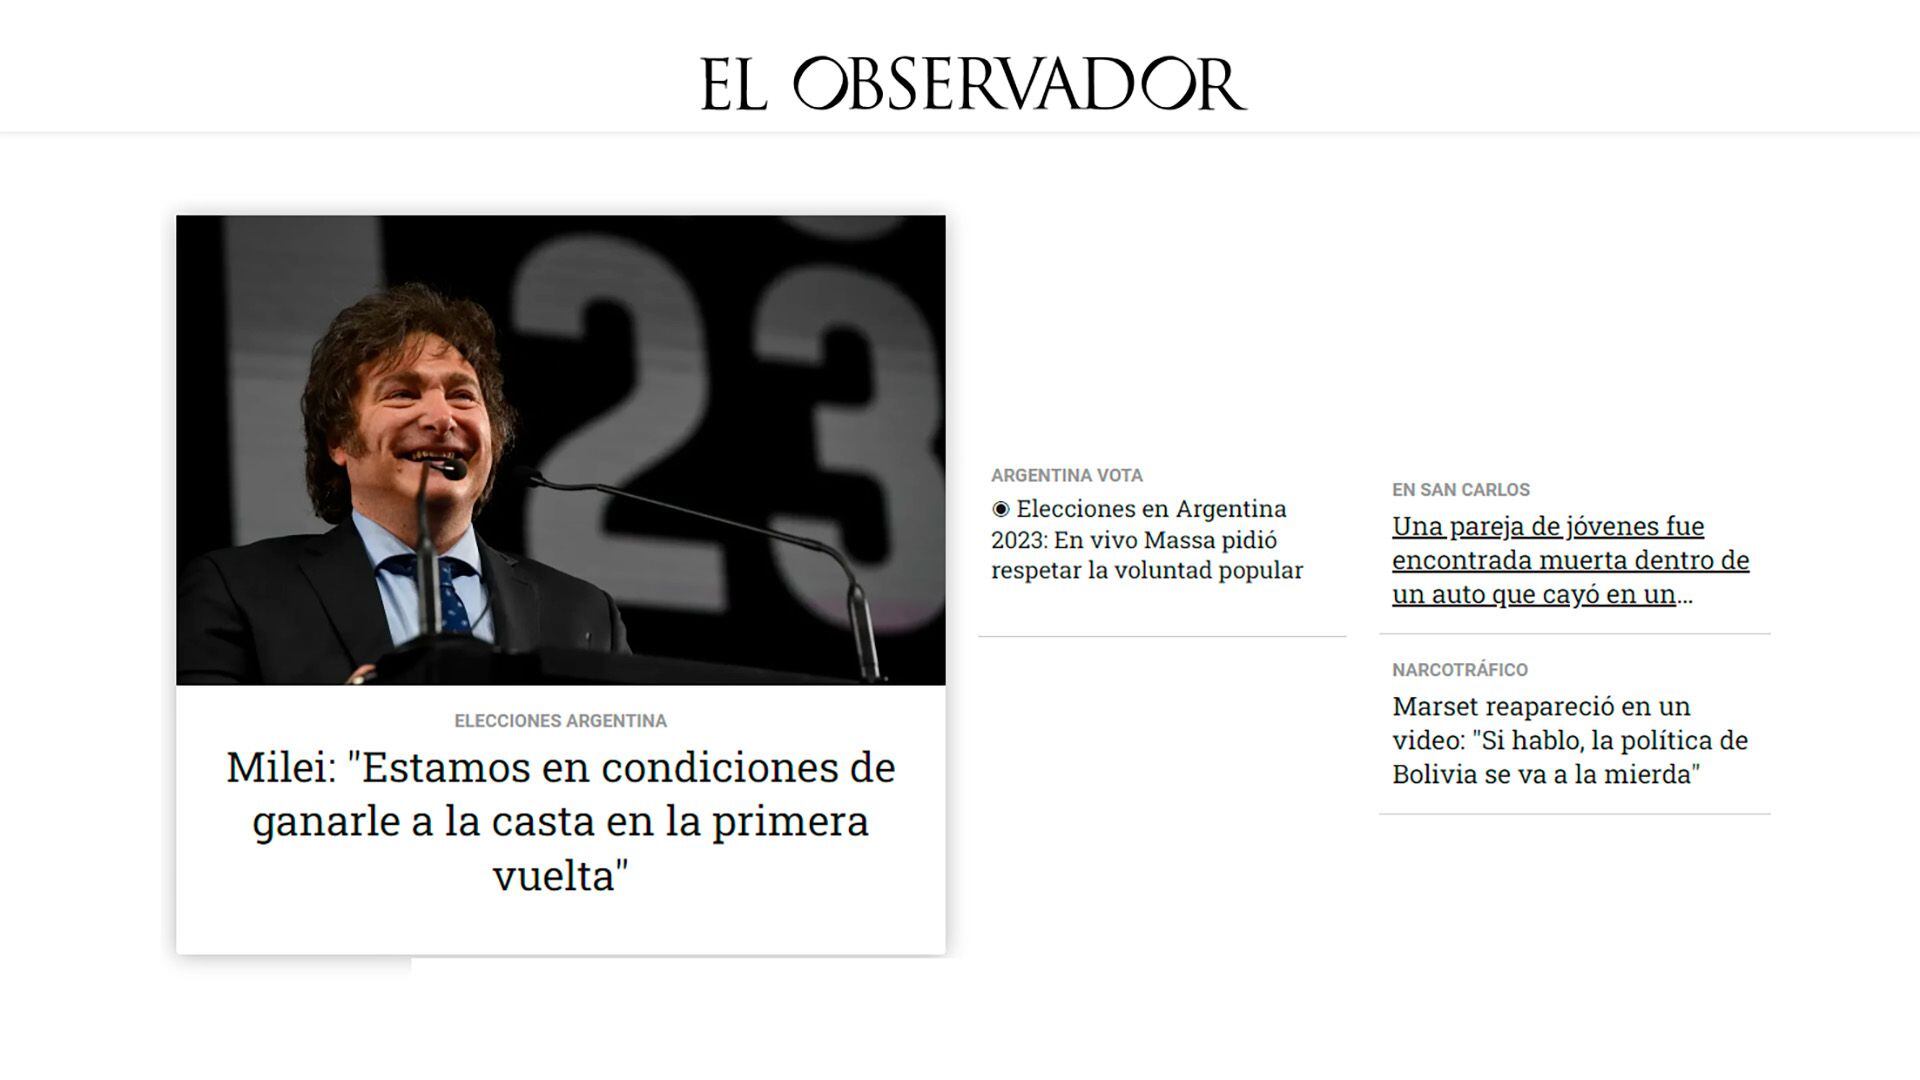 La principales noticias destacadas en El Observador, de Uruguay.